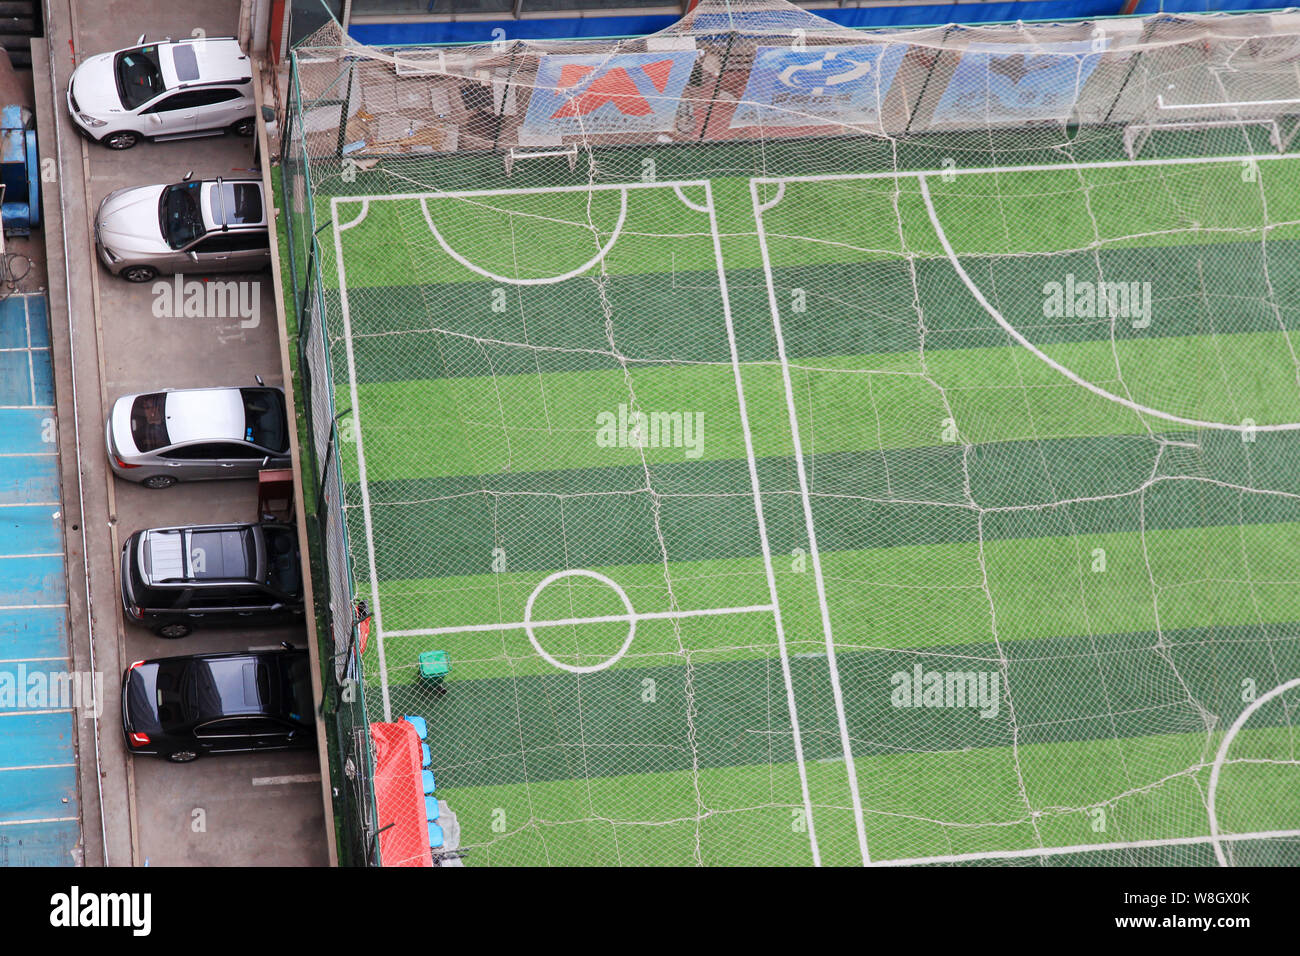 Reforma del Estadio y nueva Ciudad Deportiva - Página 11 Vista-de-un-campo-de-futbol-en-la-azotea-de-un-edificio-de-oficinas-de-dos-plantas-en-la-ciudad-de-zhengzhou-provincia-de-henan-en-china-central-3-de-junio-de-2015-fan-de-futbol-w8gx0k